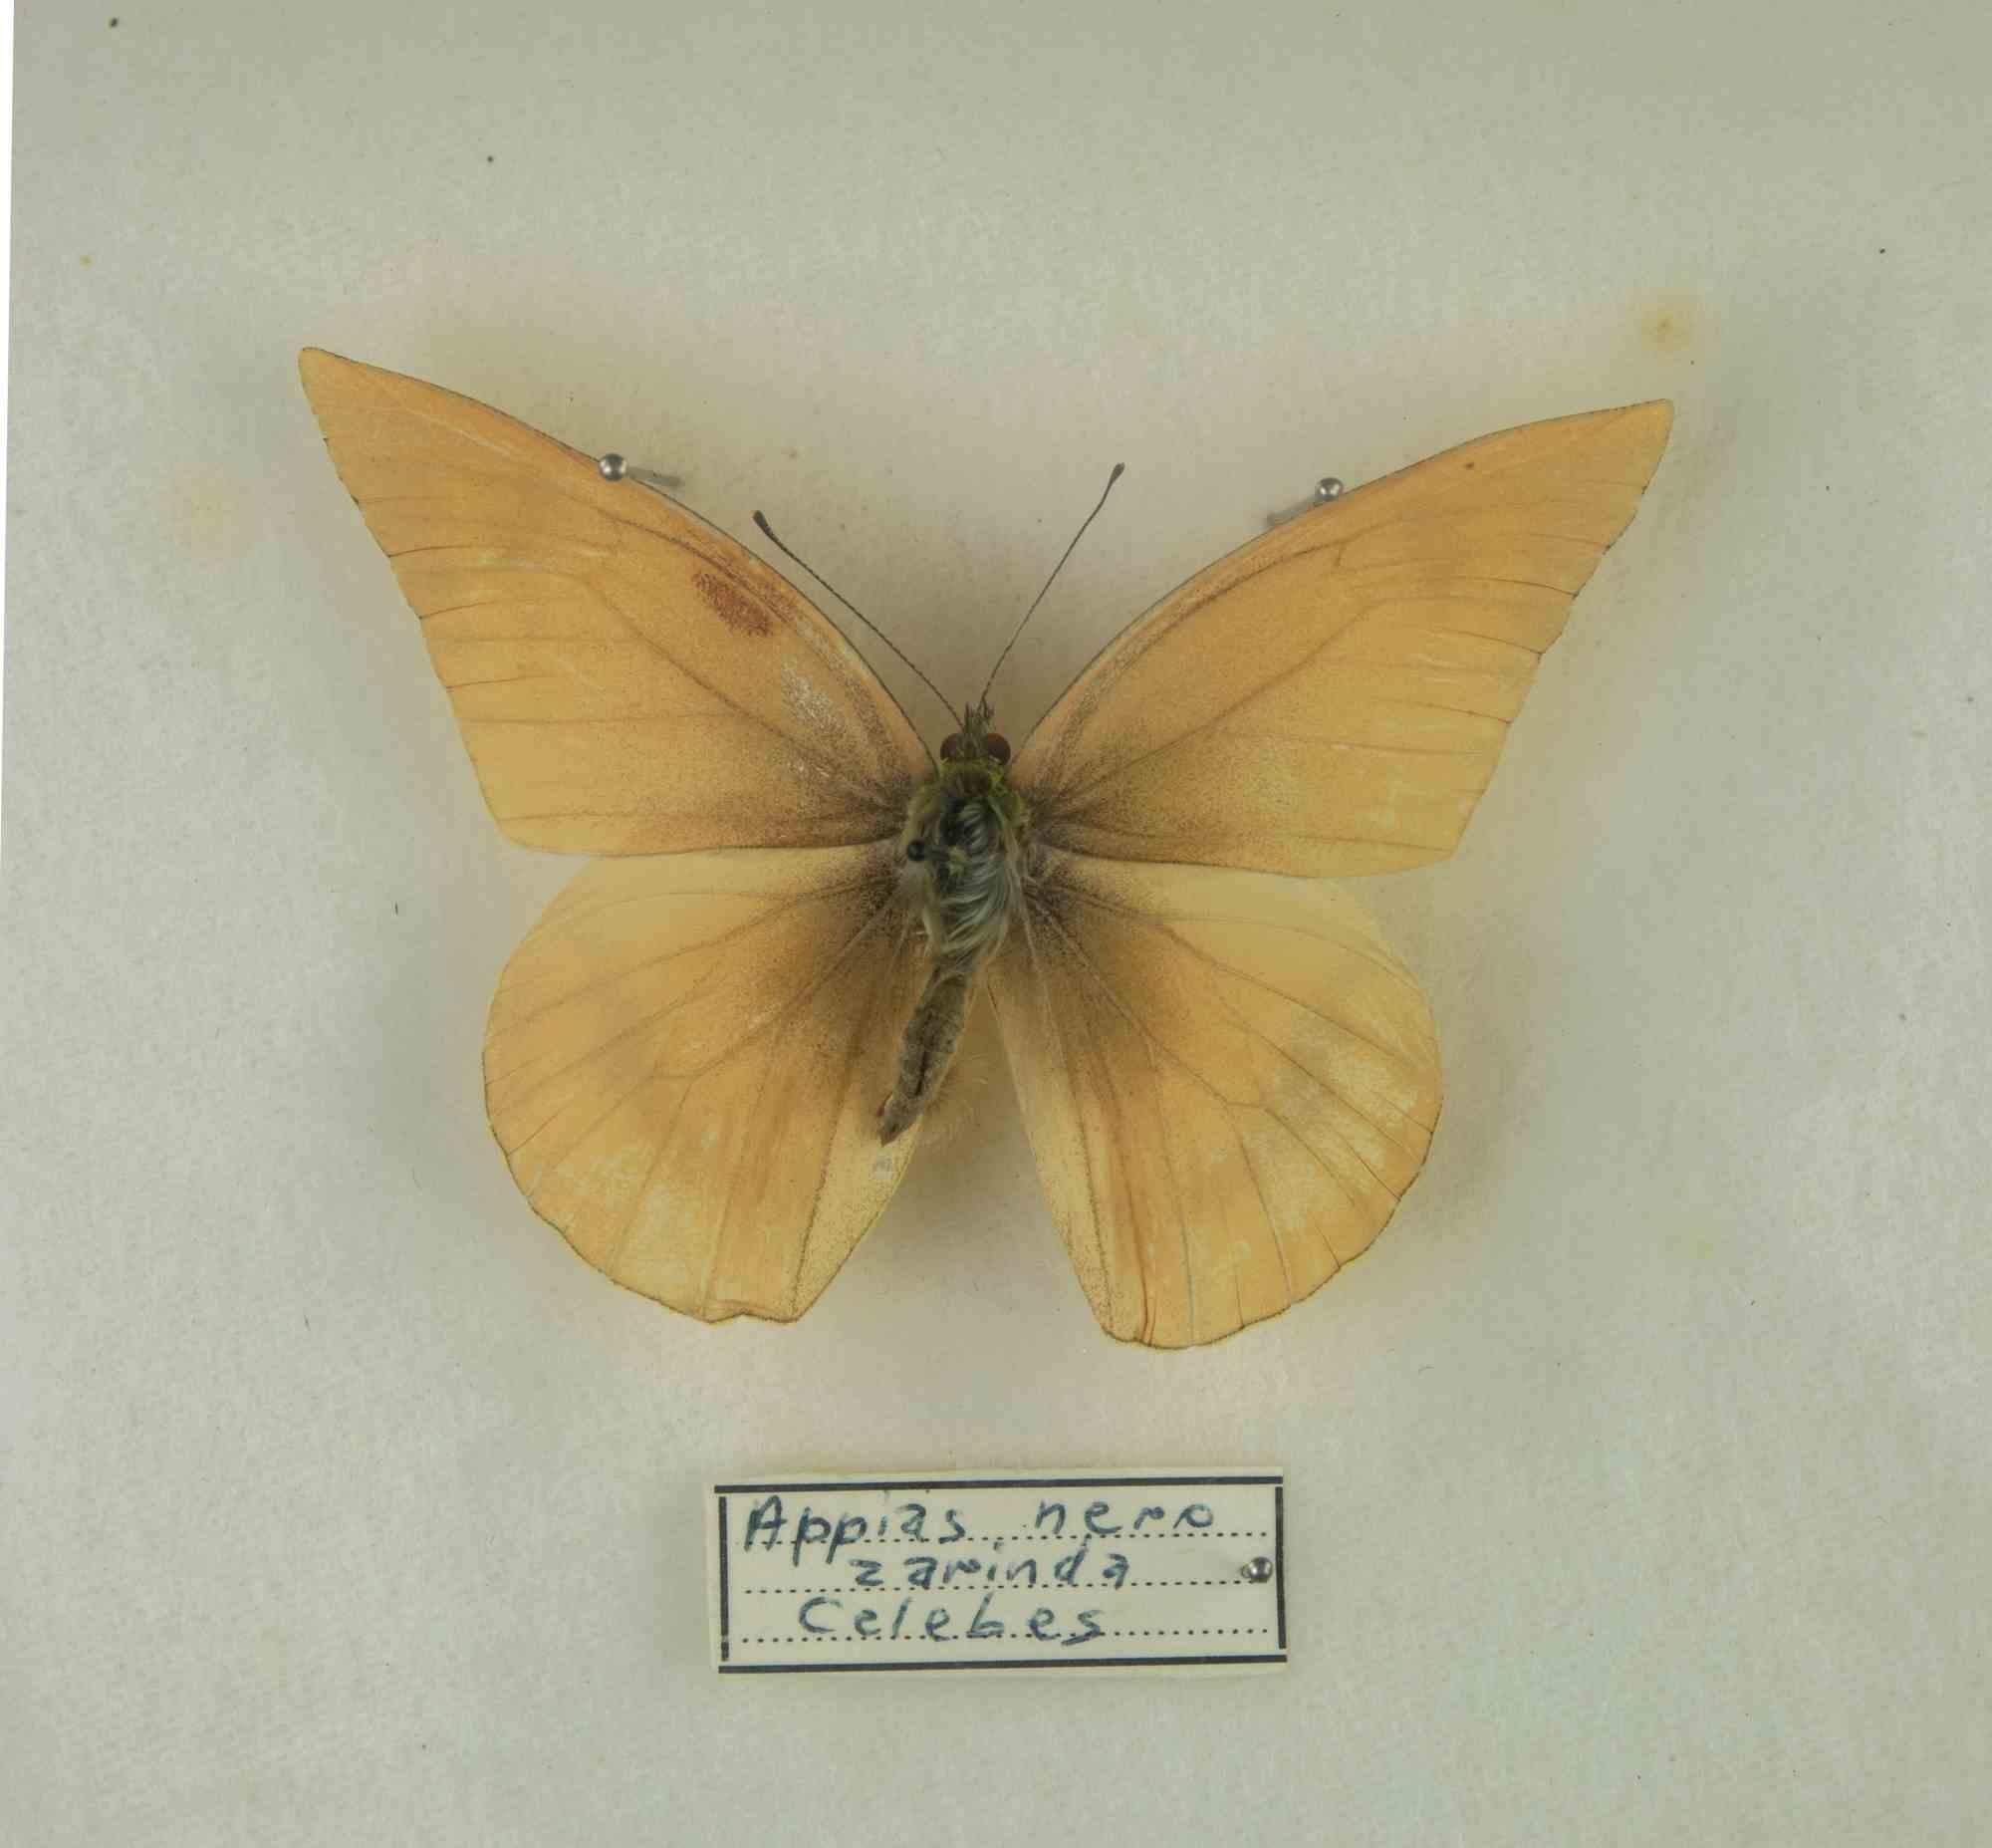 Drei Arten von ausgestopften Schmetterlingen: Appias Drusilla, Graphium doson, Troides Helena. 

Dedic auf der Rückseite mit dem Datum 8. November 1980.

39 x 26 cm.

Gute Bedingungen!

 